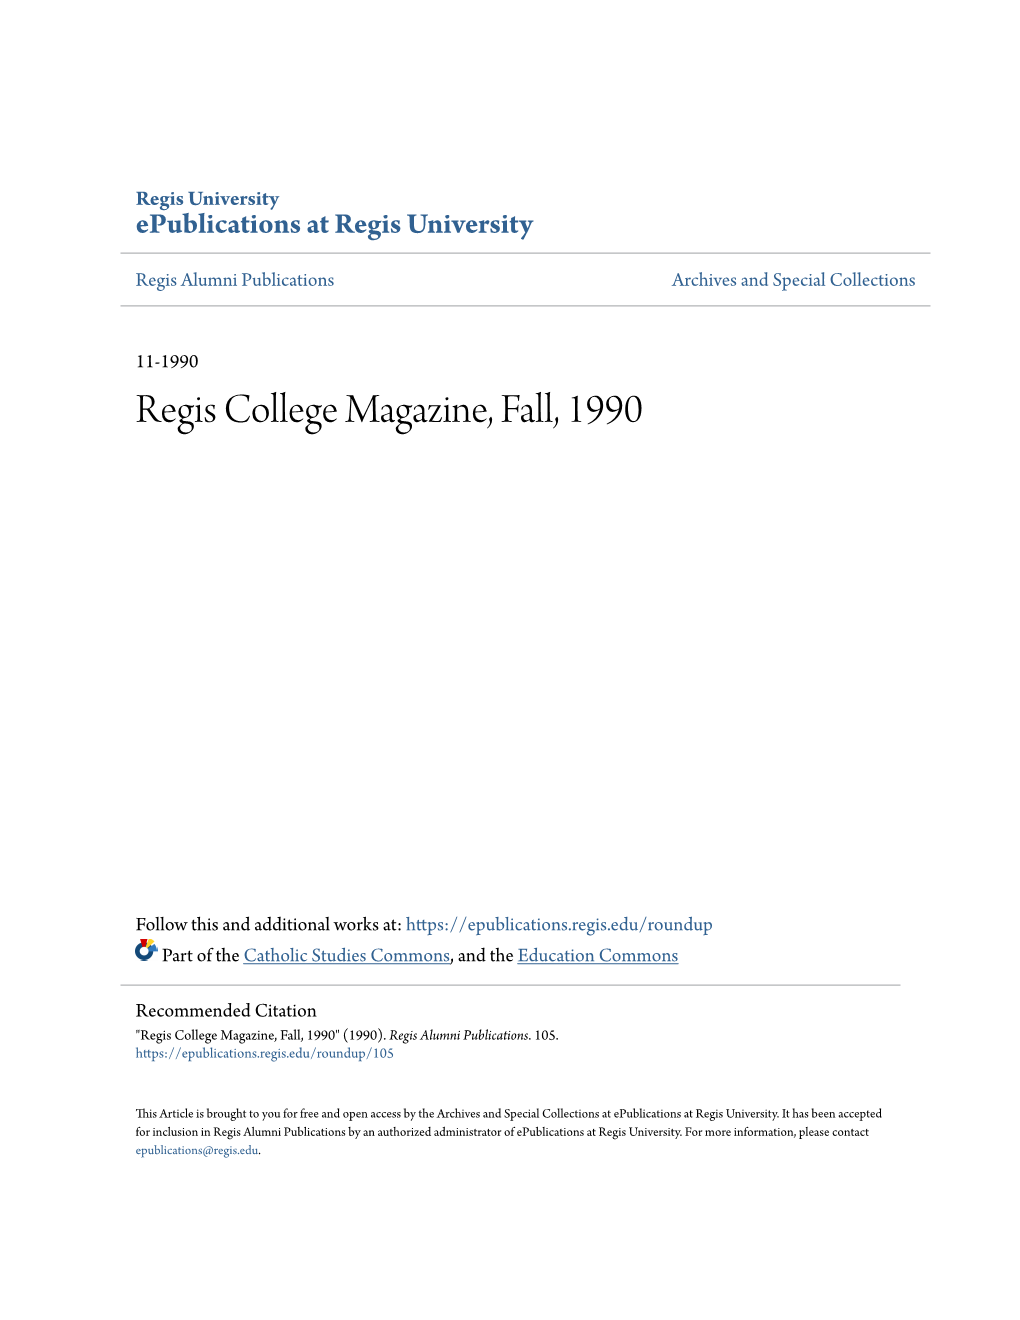 Regis College Magazine, Fall, 1990